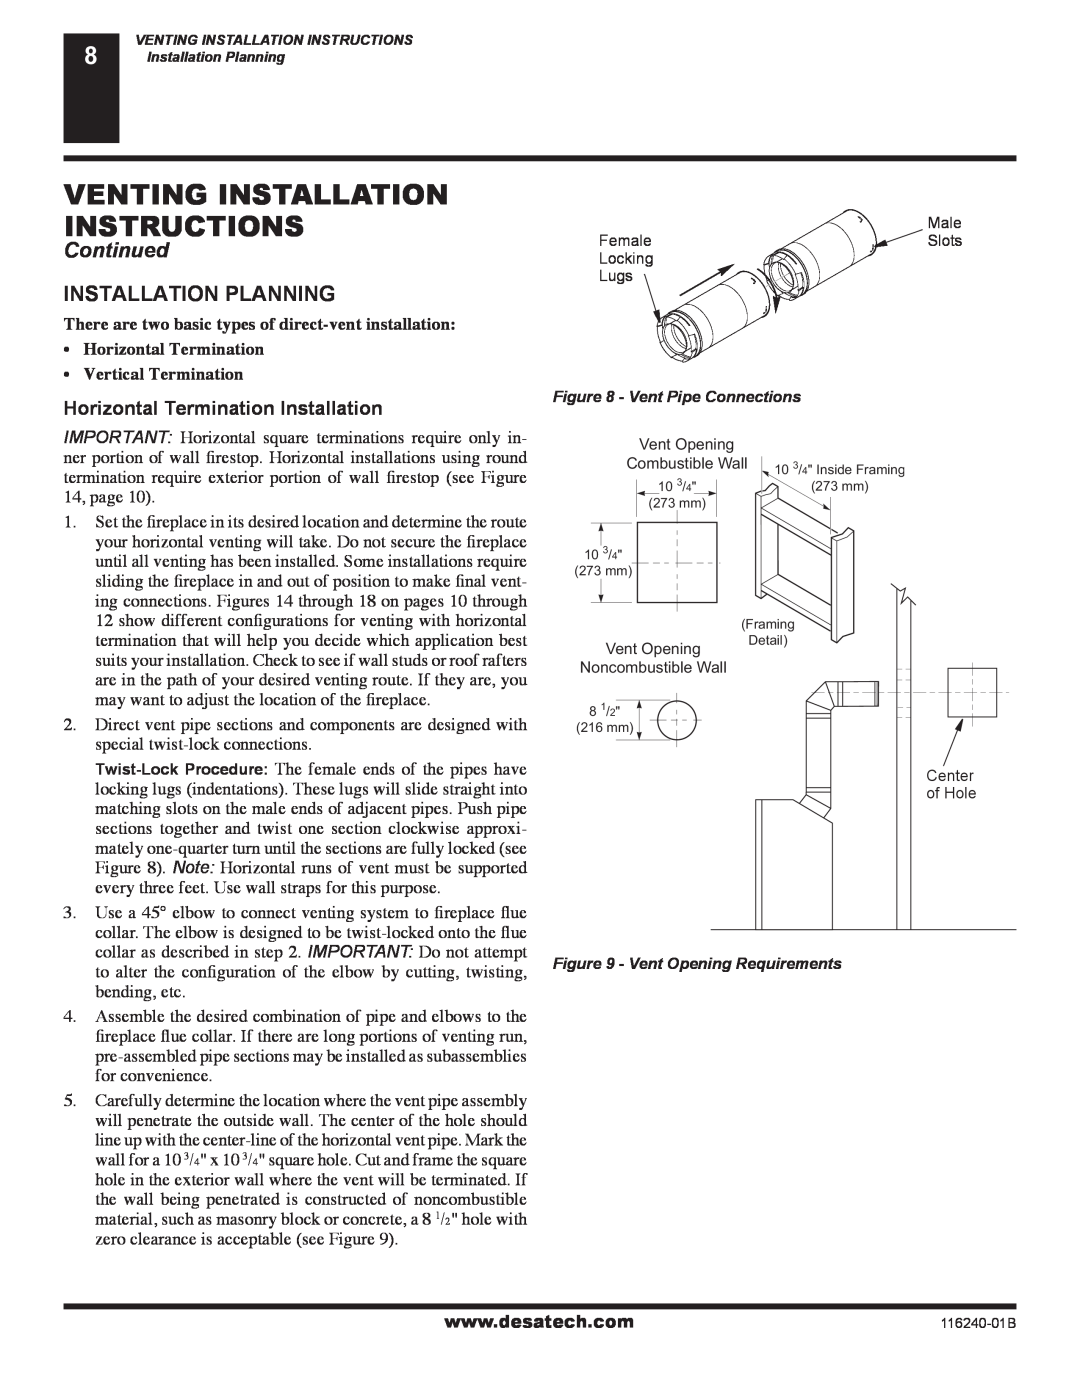 Desa (V)KC42NE SERIE installation manual Venting Installation Instructions, Continued, Installation Planning 